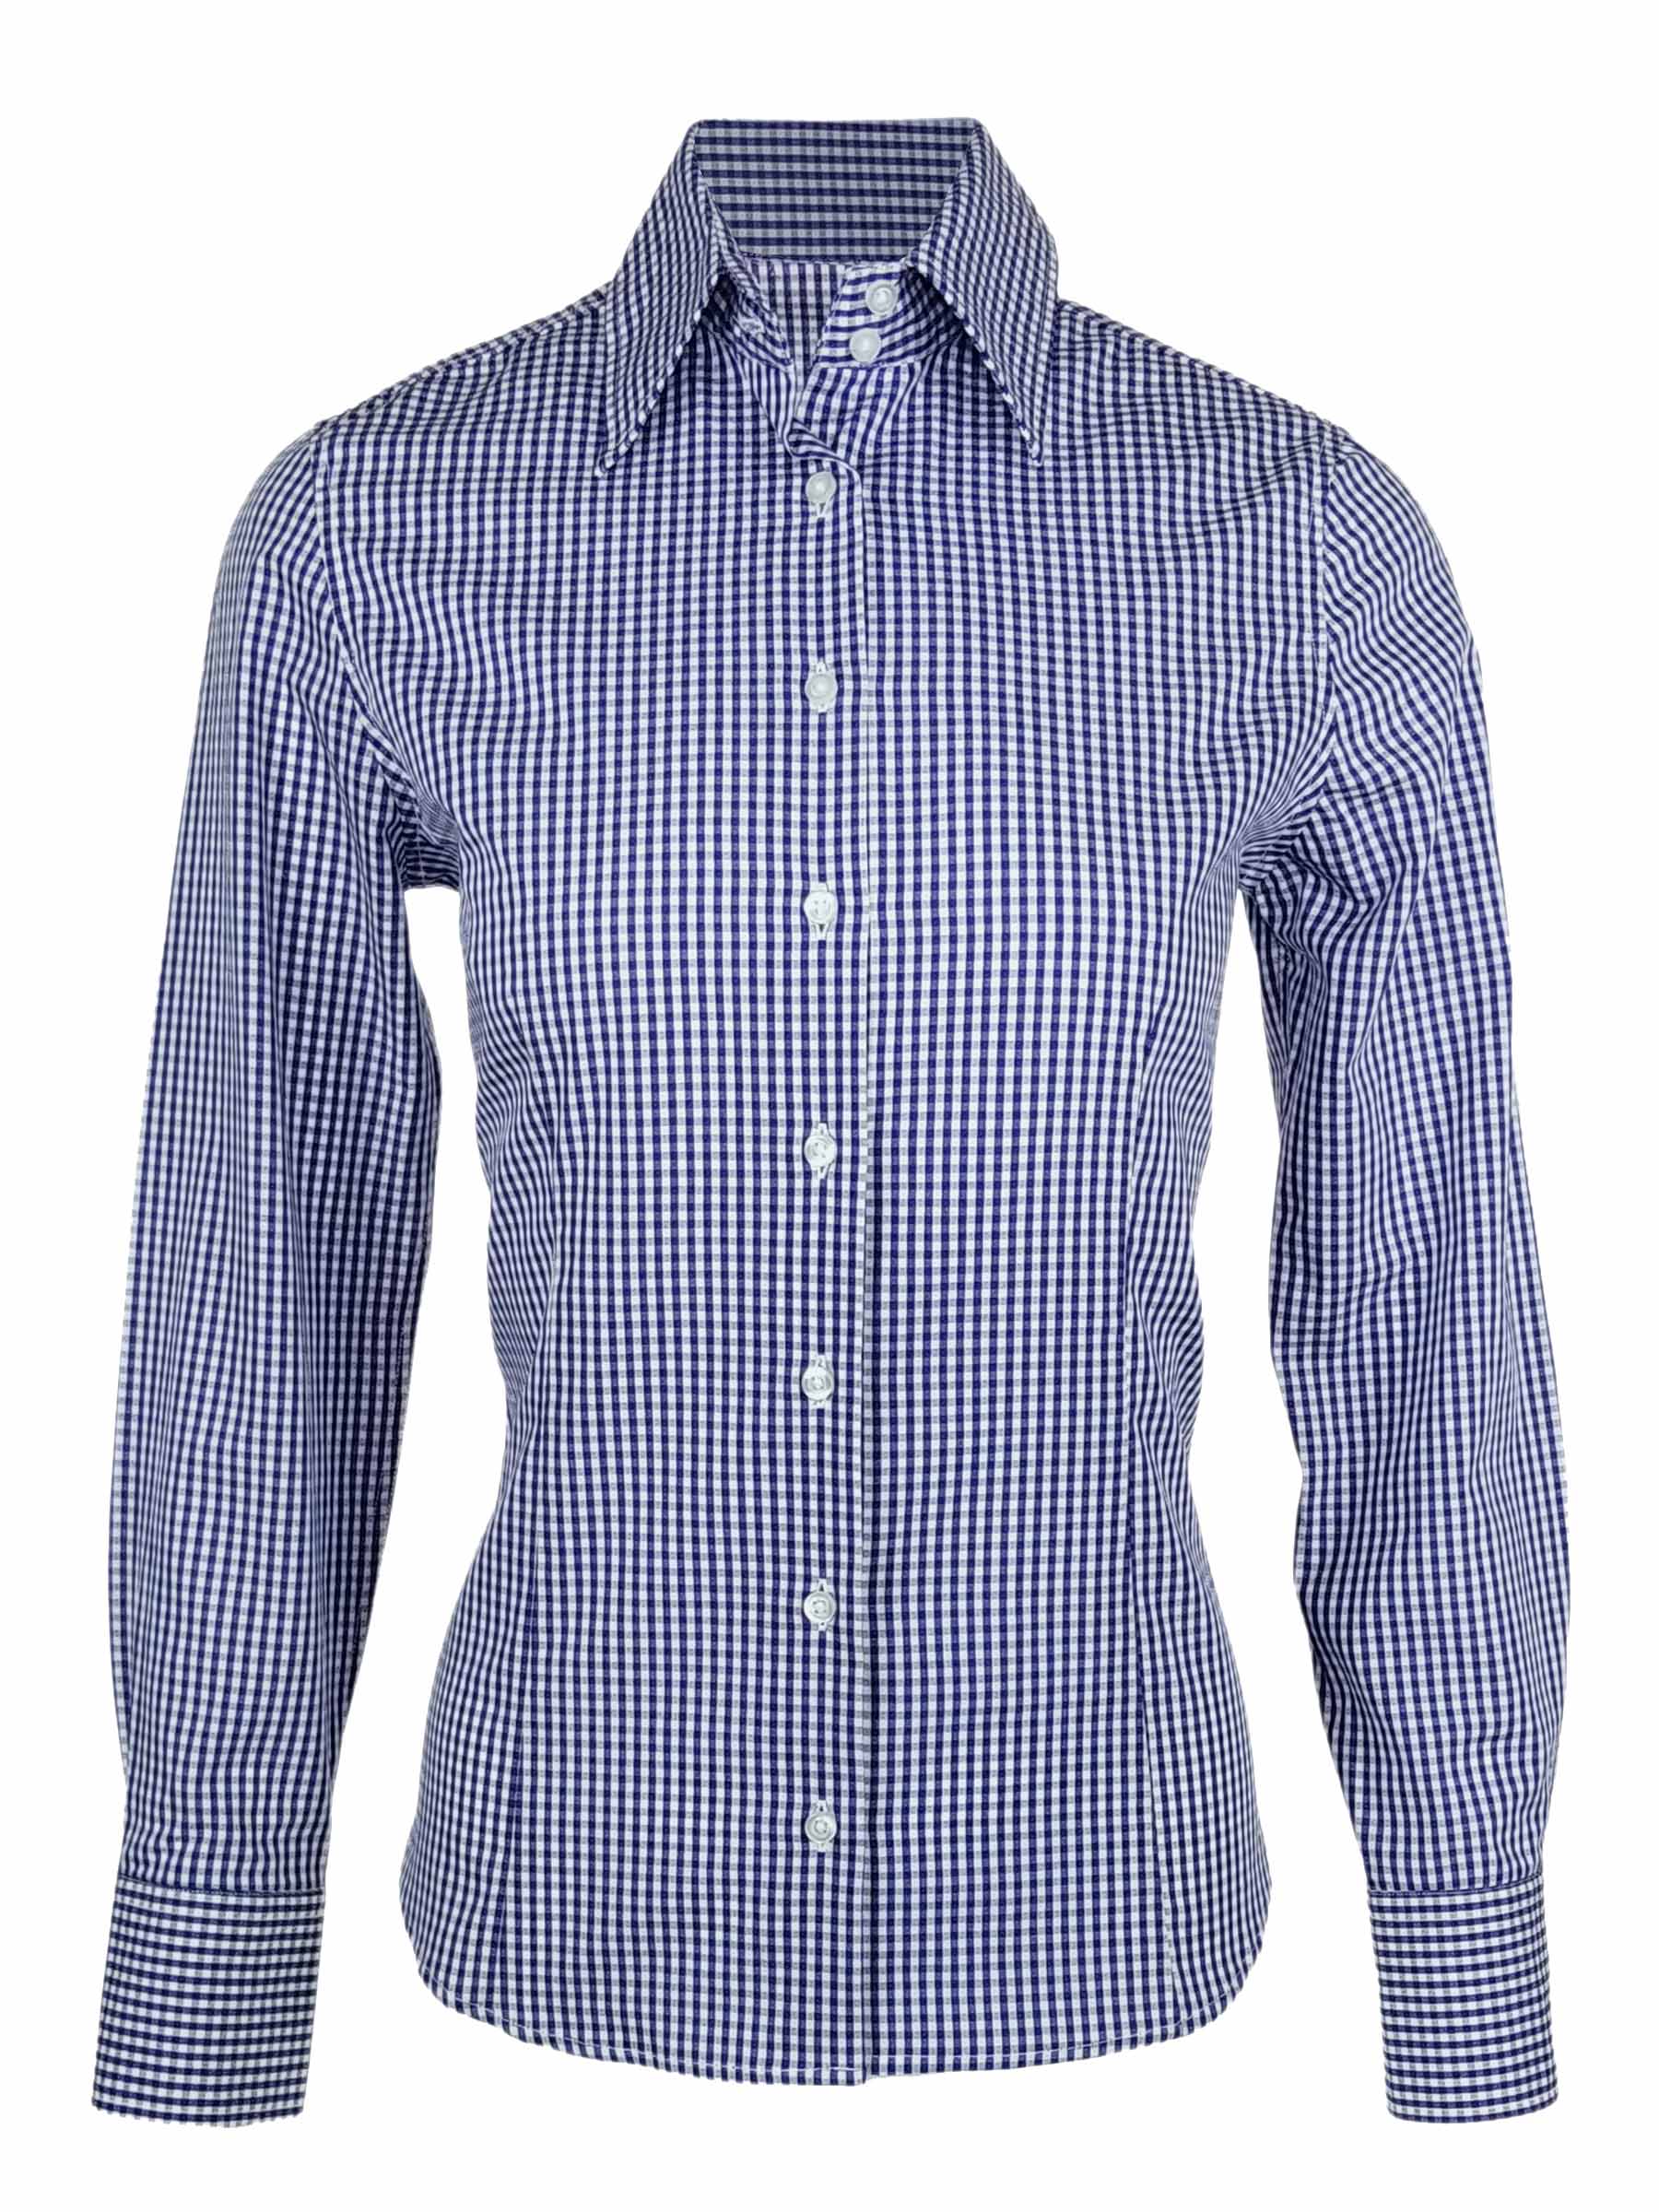 Women's Cotton Gingham Shirt - Cobalt Blue Check Long Sleeve - Uniform Edit